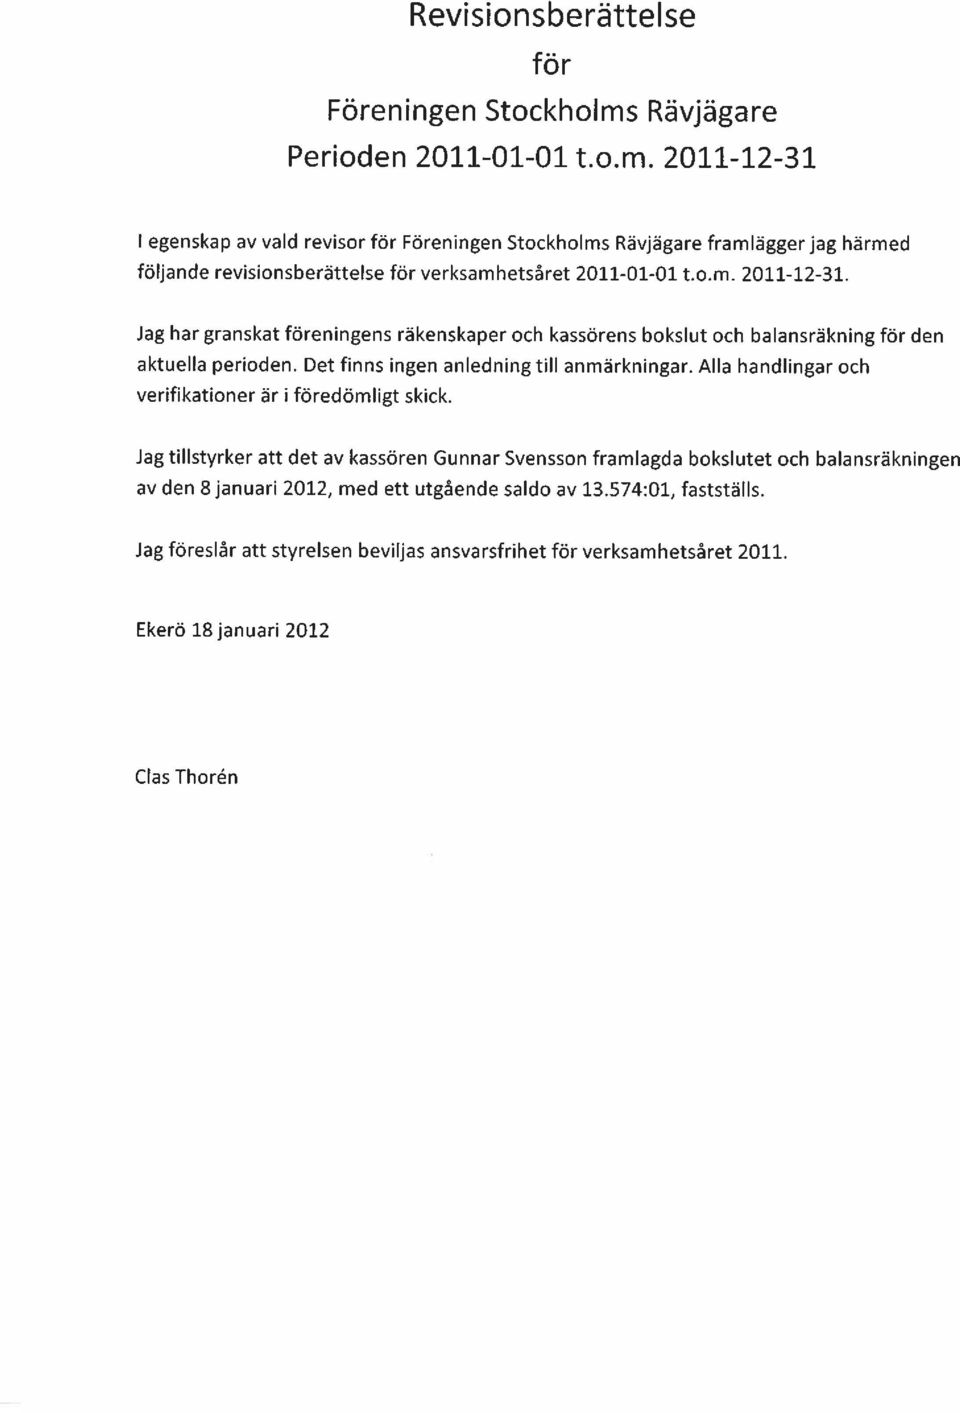 2011-12-31 1 egenskap av vald revisor för Föreningen Stockholms Rävjägare framlägger jag härmed följande revisionsberättelse för verksamhetsåret 2011-01-01 t.o.m. 2011-12-31.